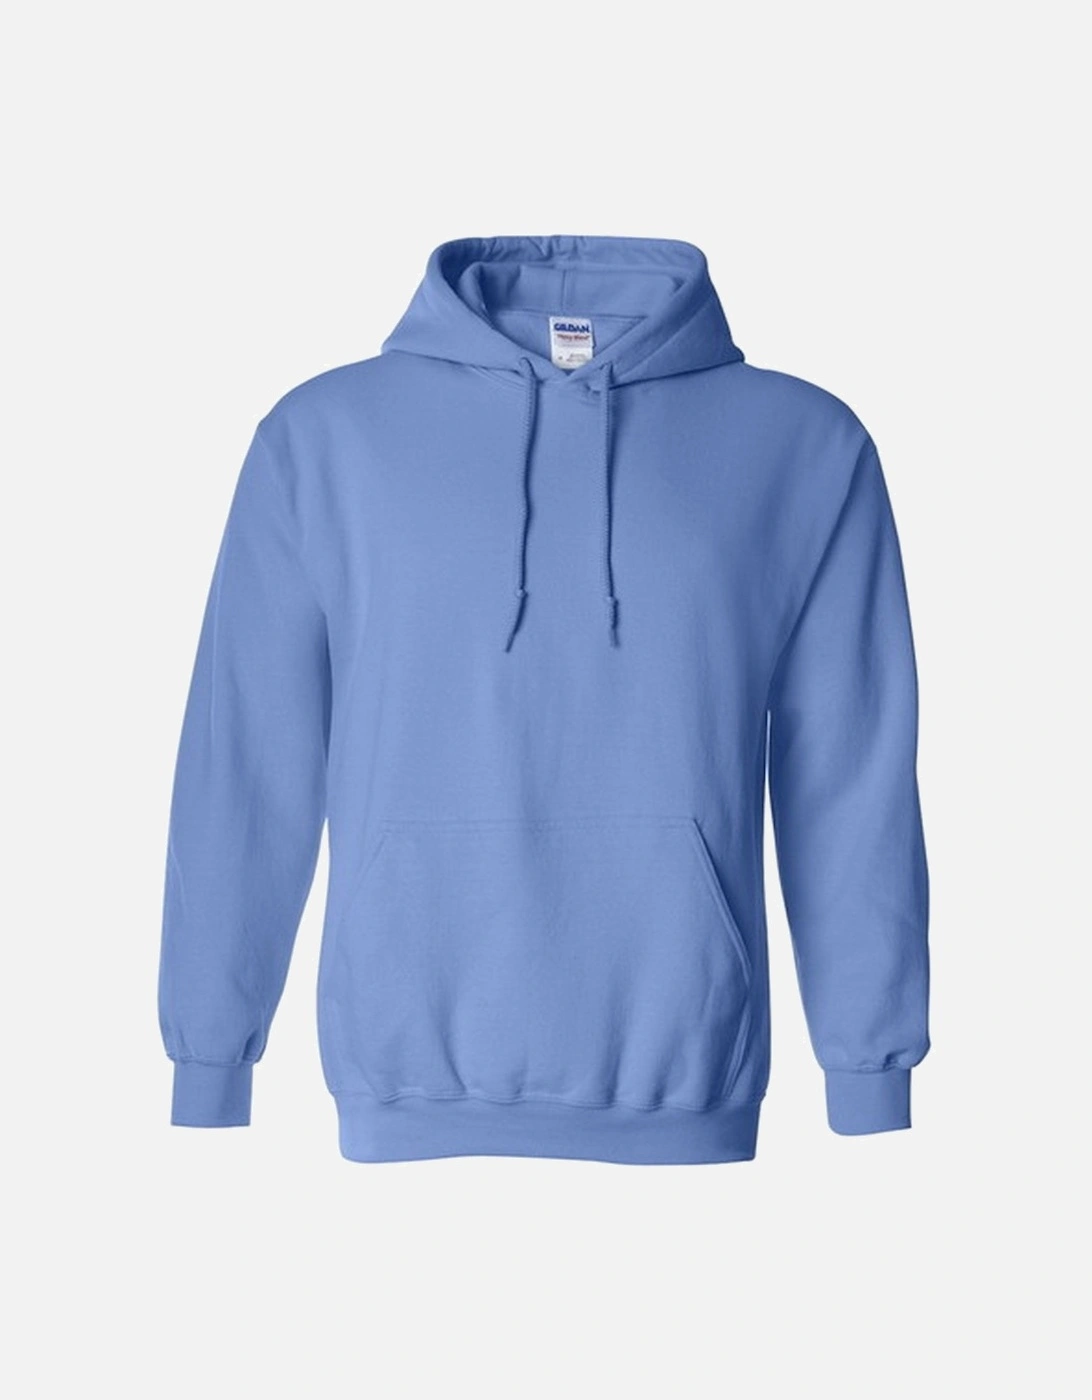 Heavy Blend Adult Unisex Hooded Sweatshirt / Hoodie, 4 of 3